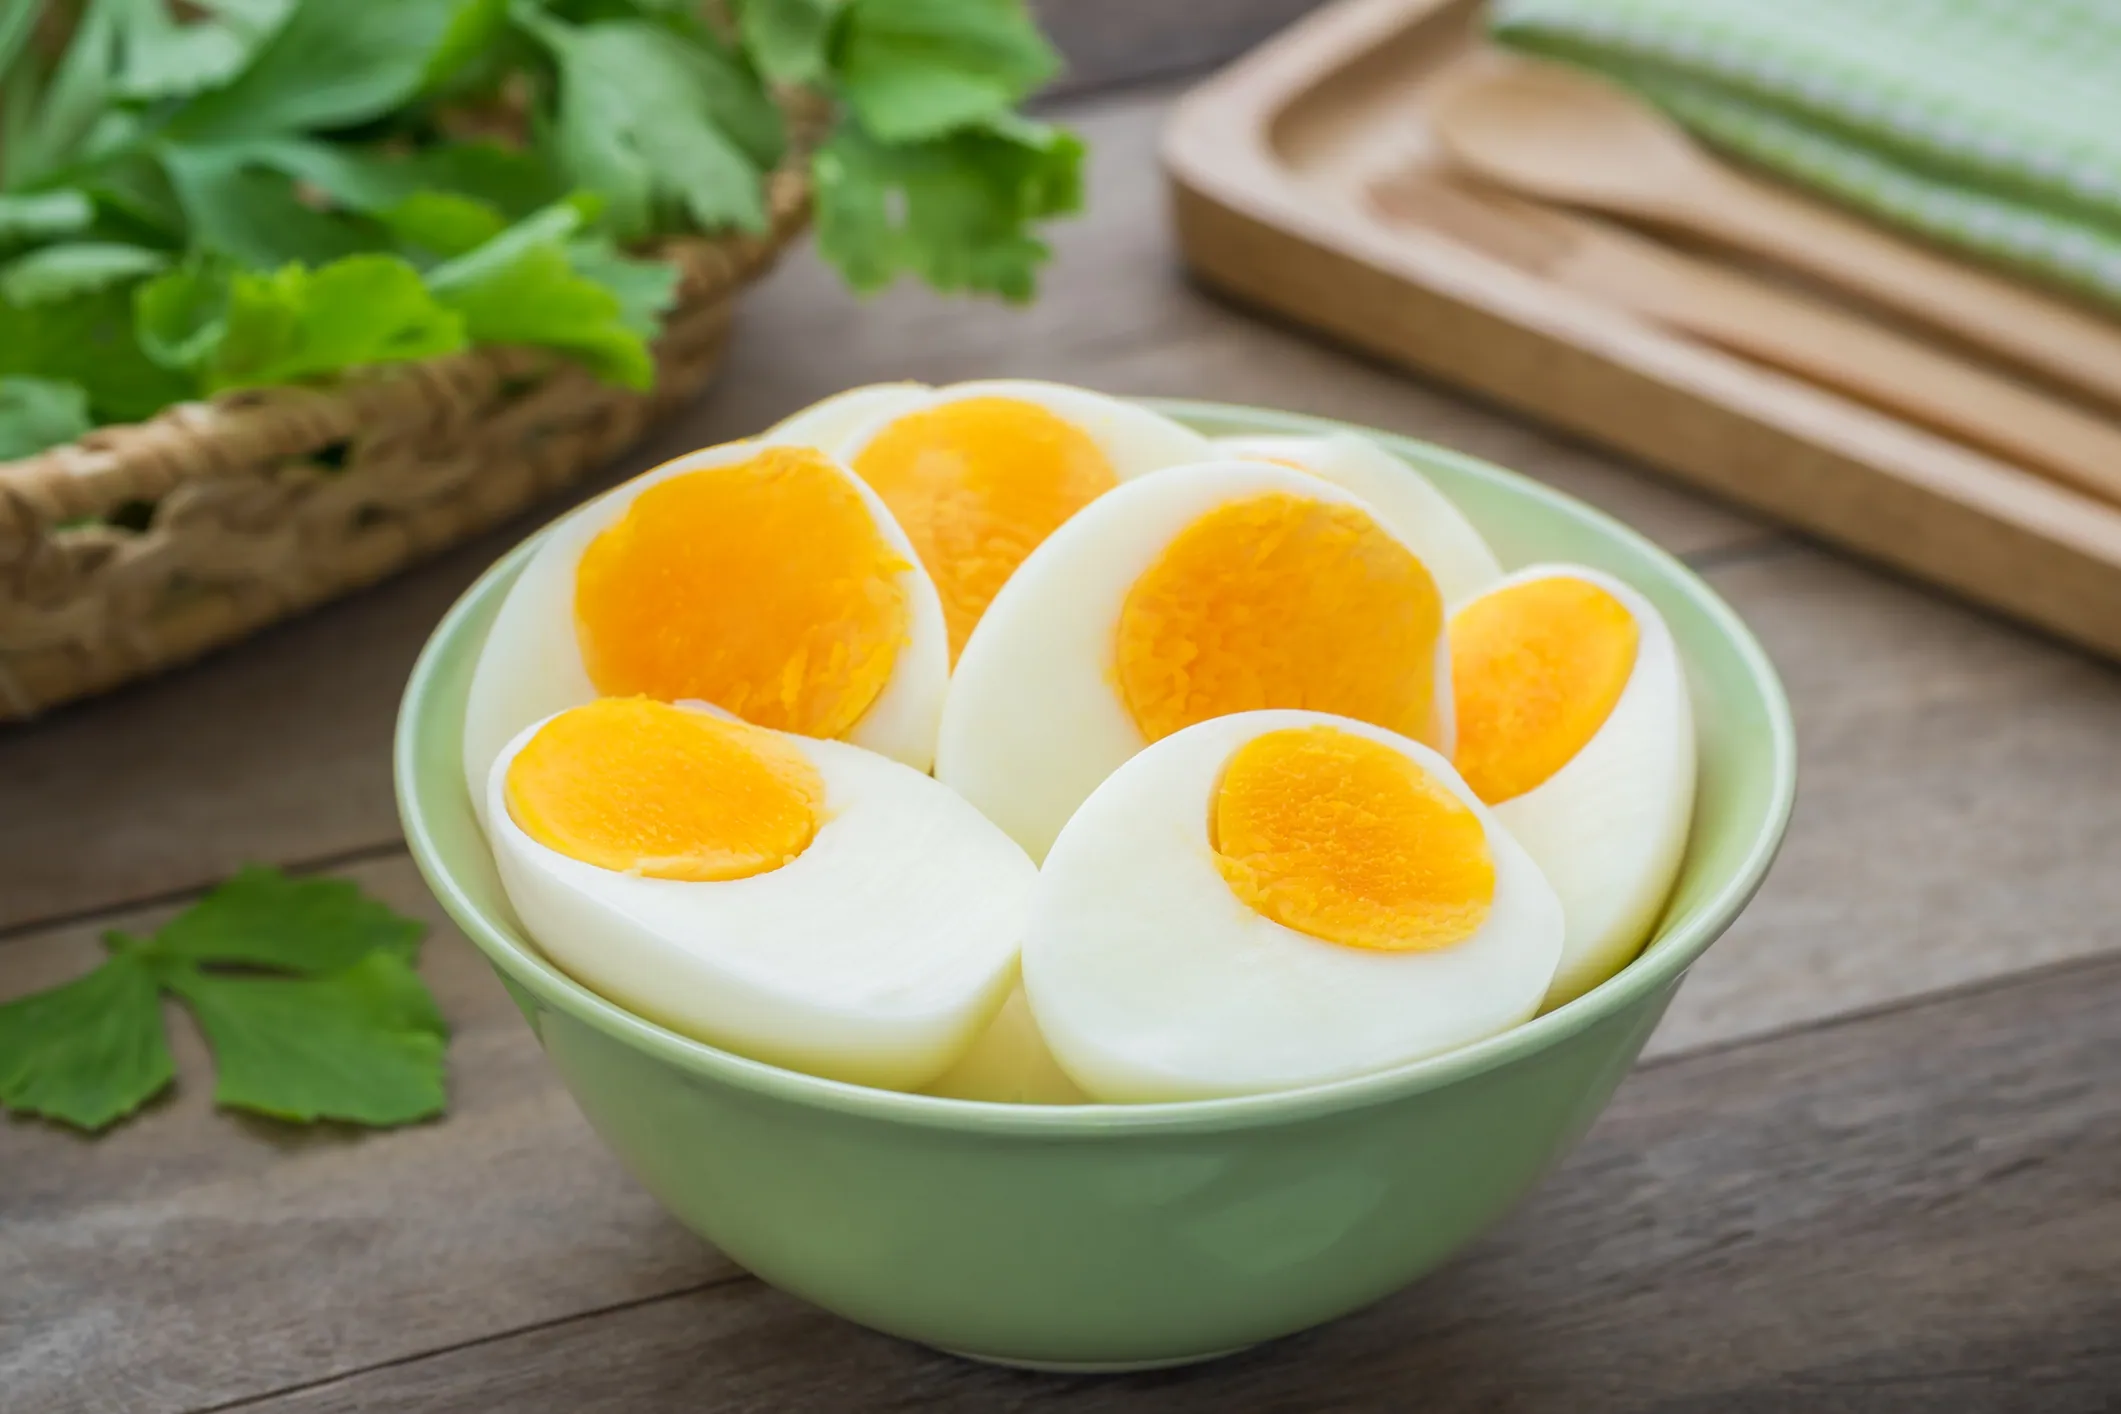 Puedes agregar un par de huevos duros al final de la cocción para dar una dimensión adicional de textura y sabor.